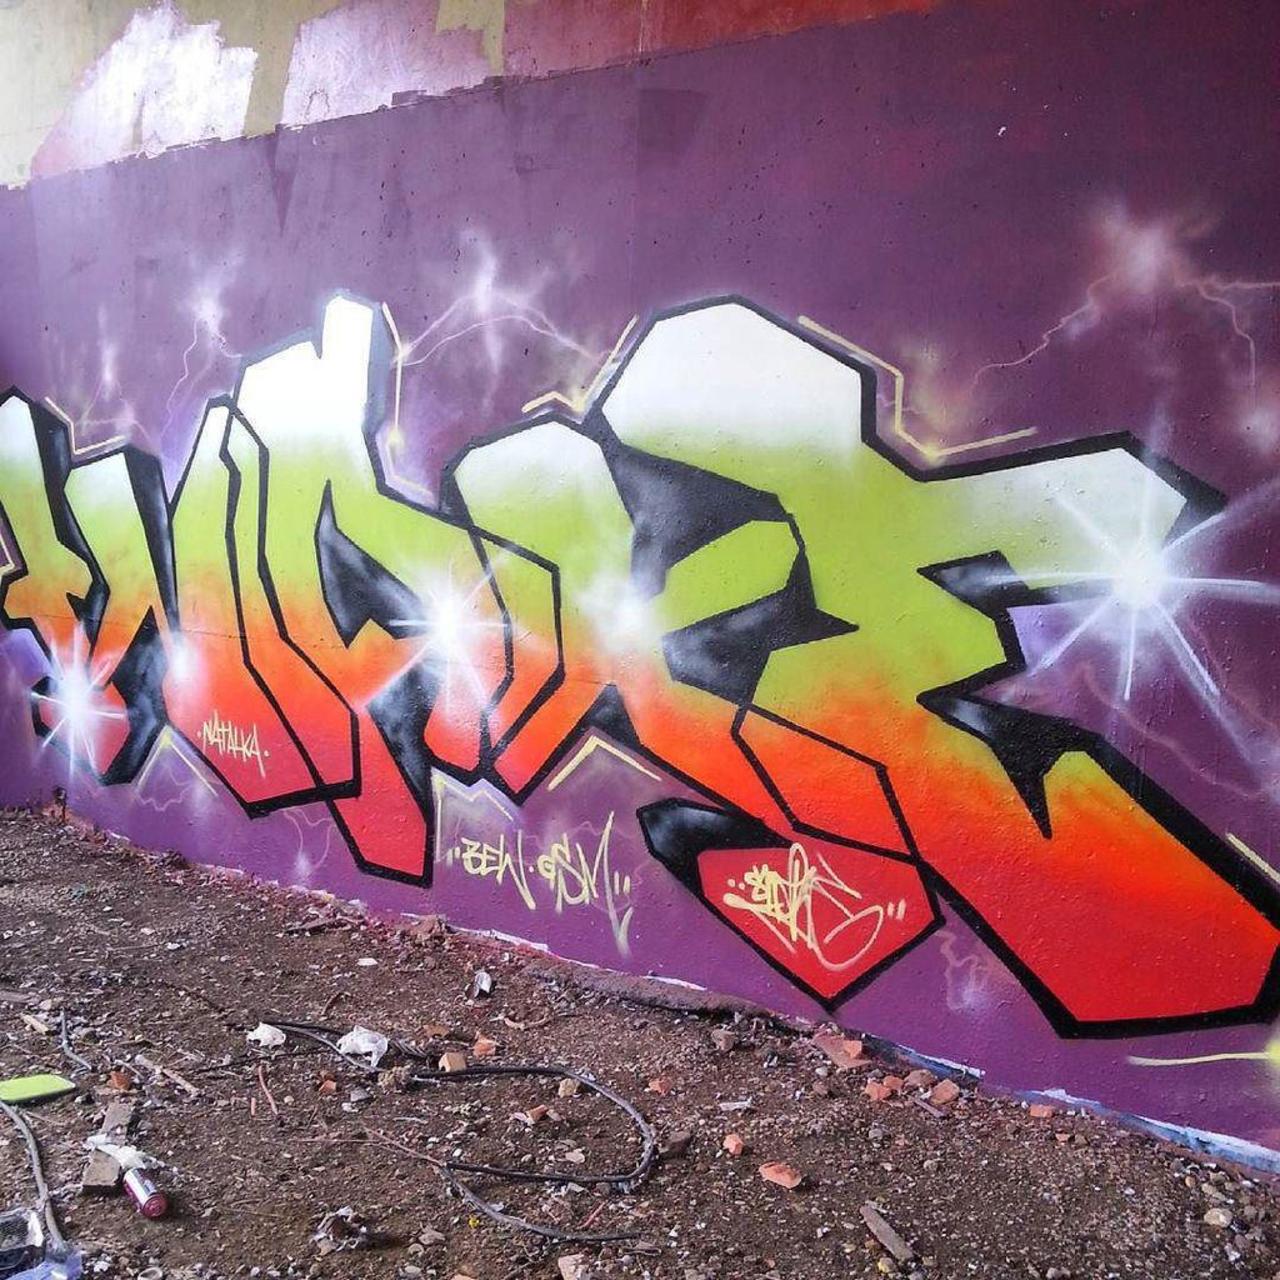 RT @artpushr: via #northampton_graffiti "http://bit.ly/1RksPRd" #graffiti #streetart http://t.co/P3o4fxxgRc